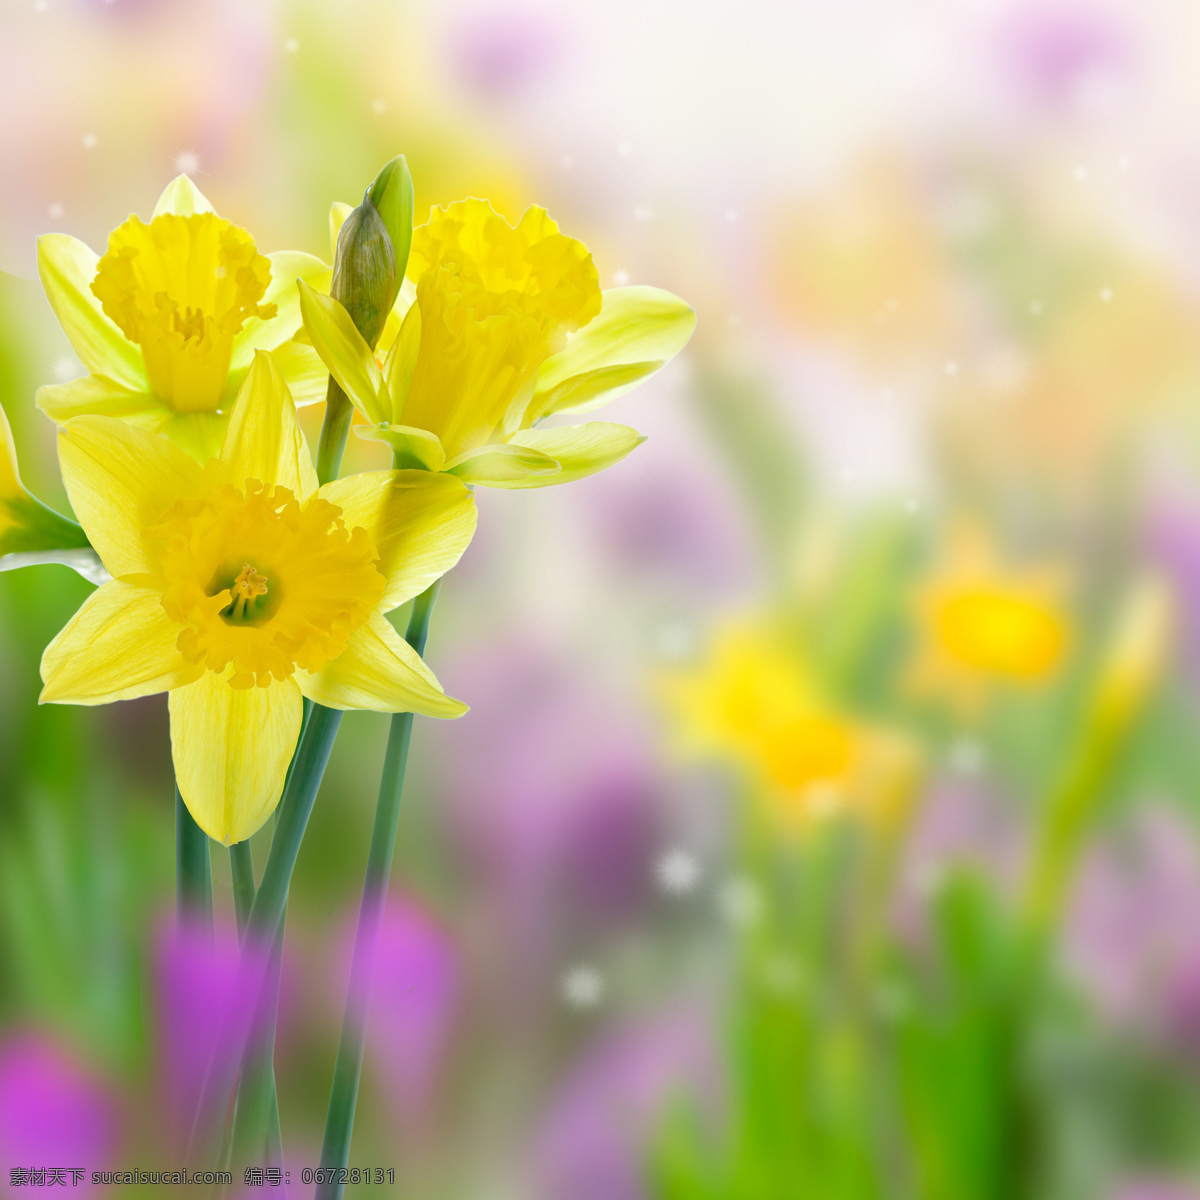 美丽鲜花背景 春天 春季 鲜花背景 花朵 花卉 梦幻背景 花草树木 生物世界 黄色